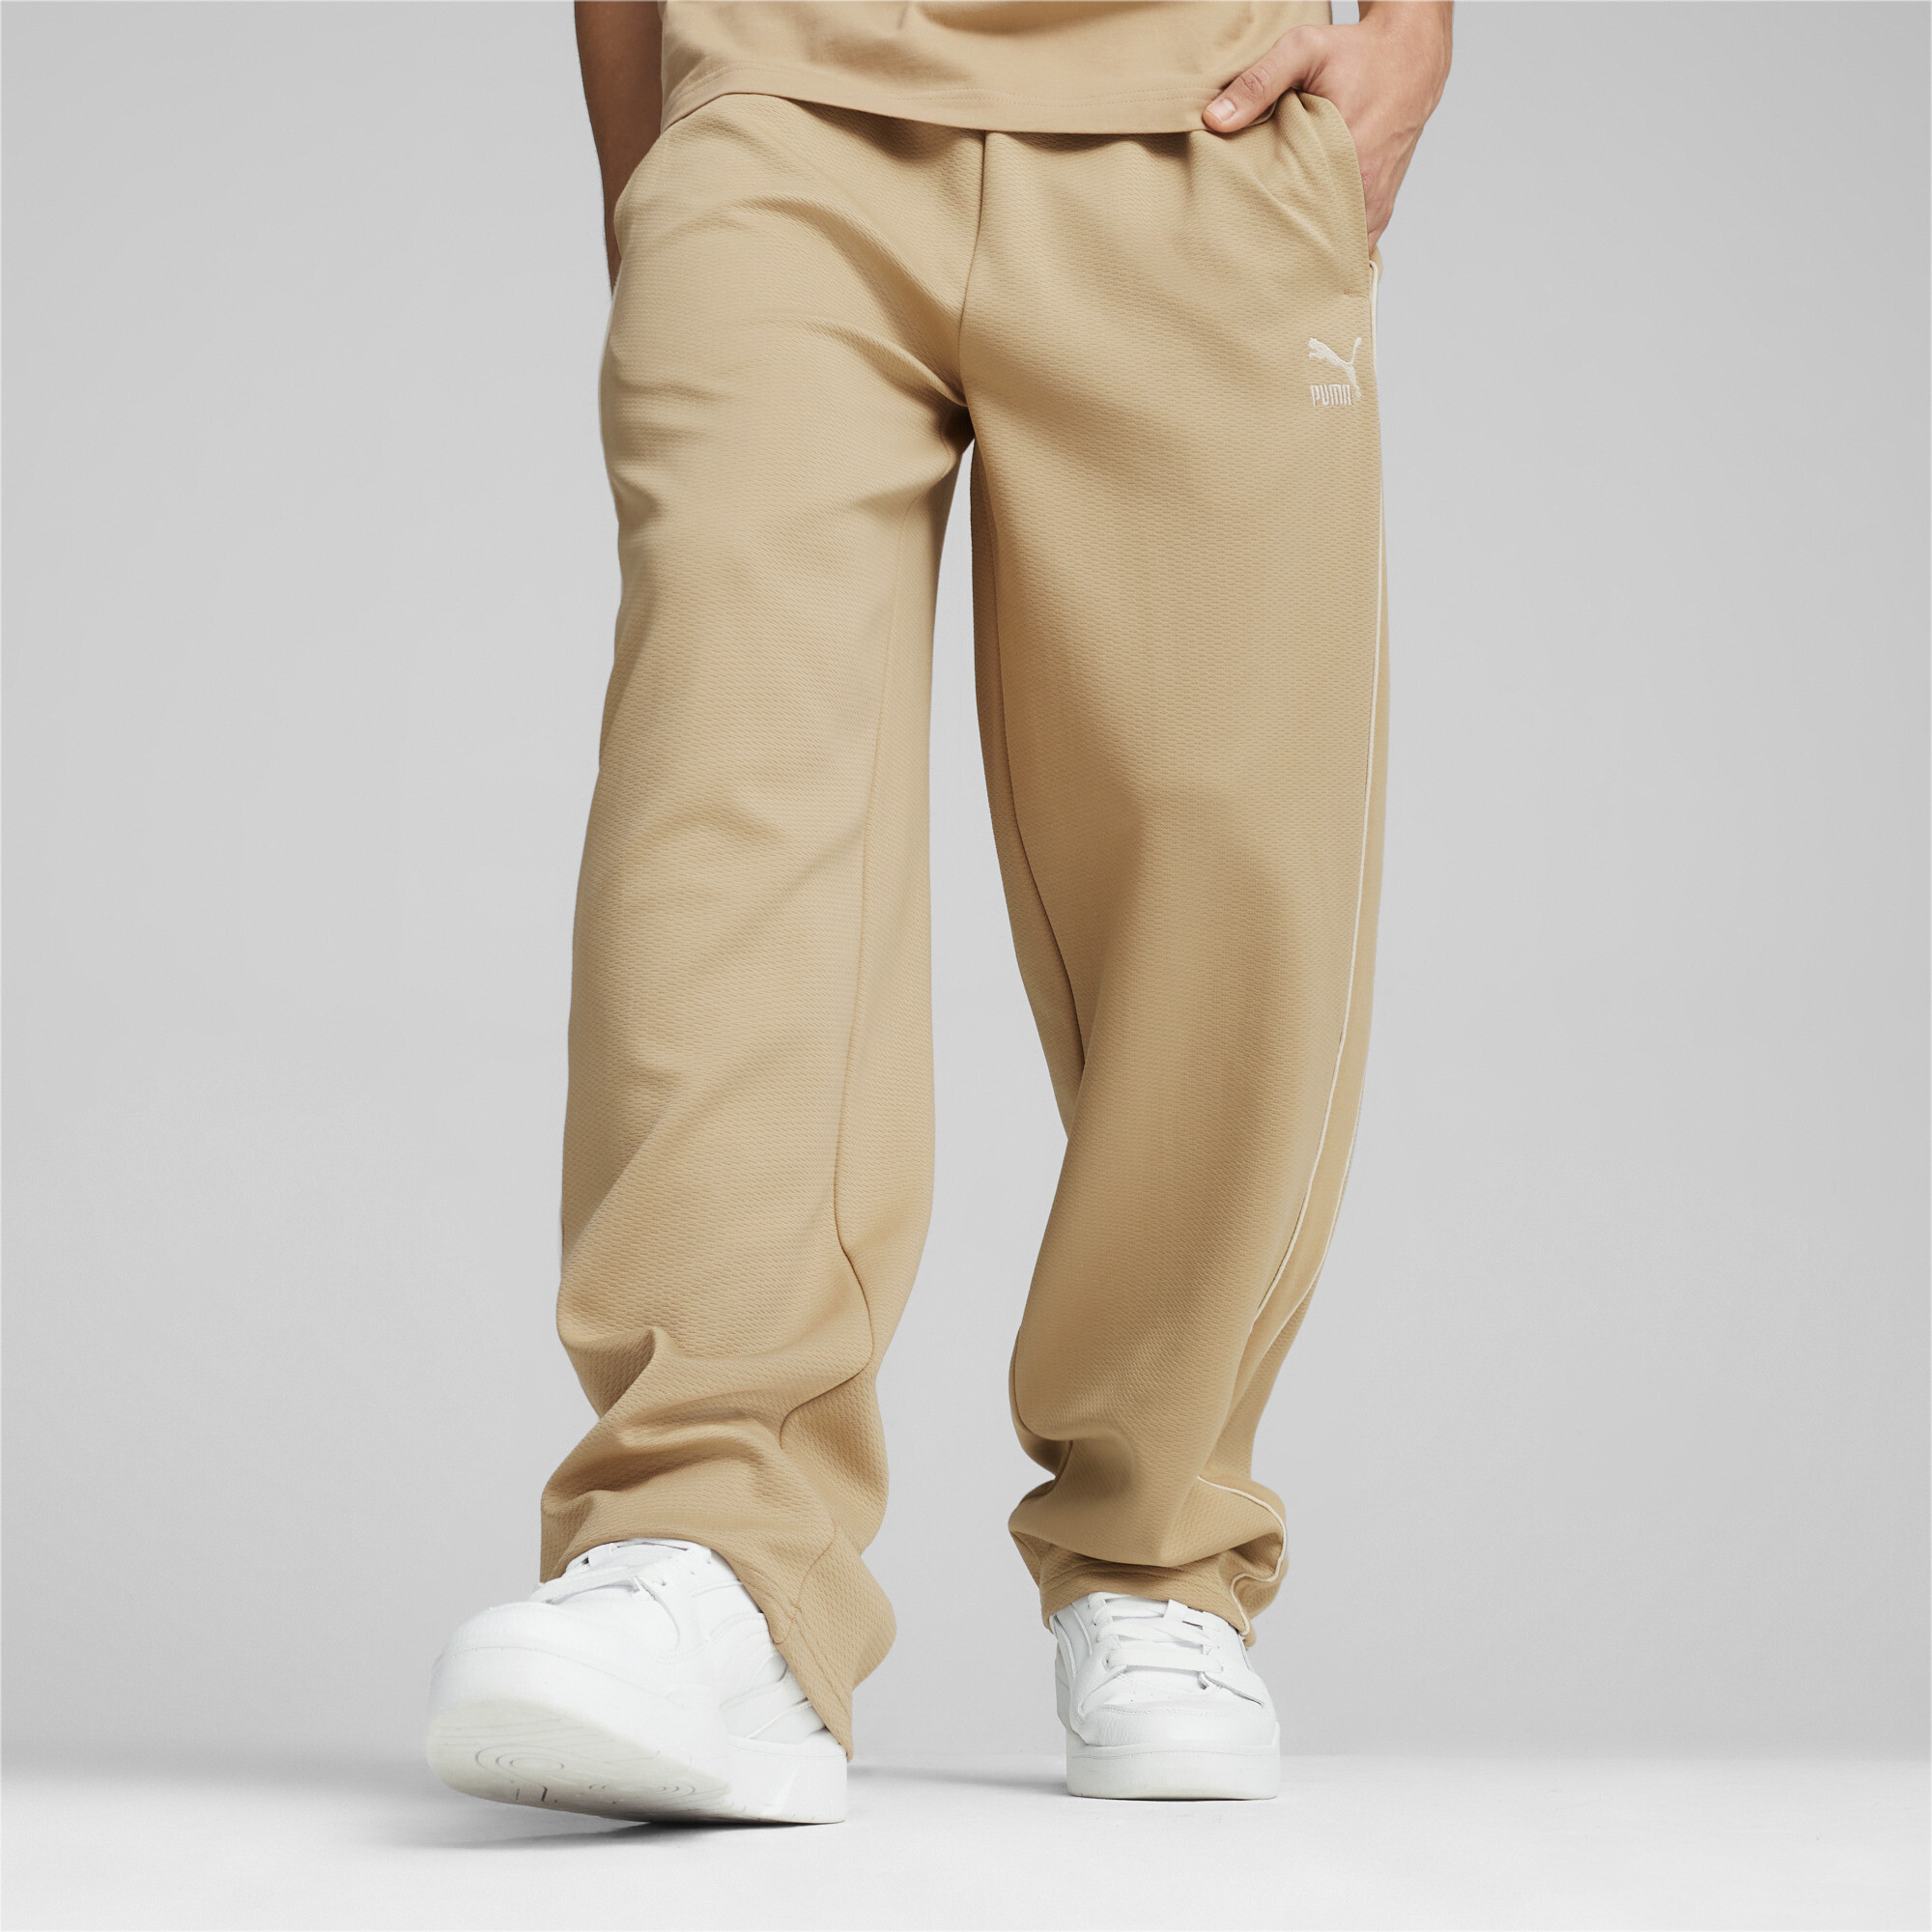 Men's Puma T7's Straight Track Pants, Beige, Size M, Men